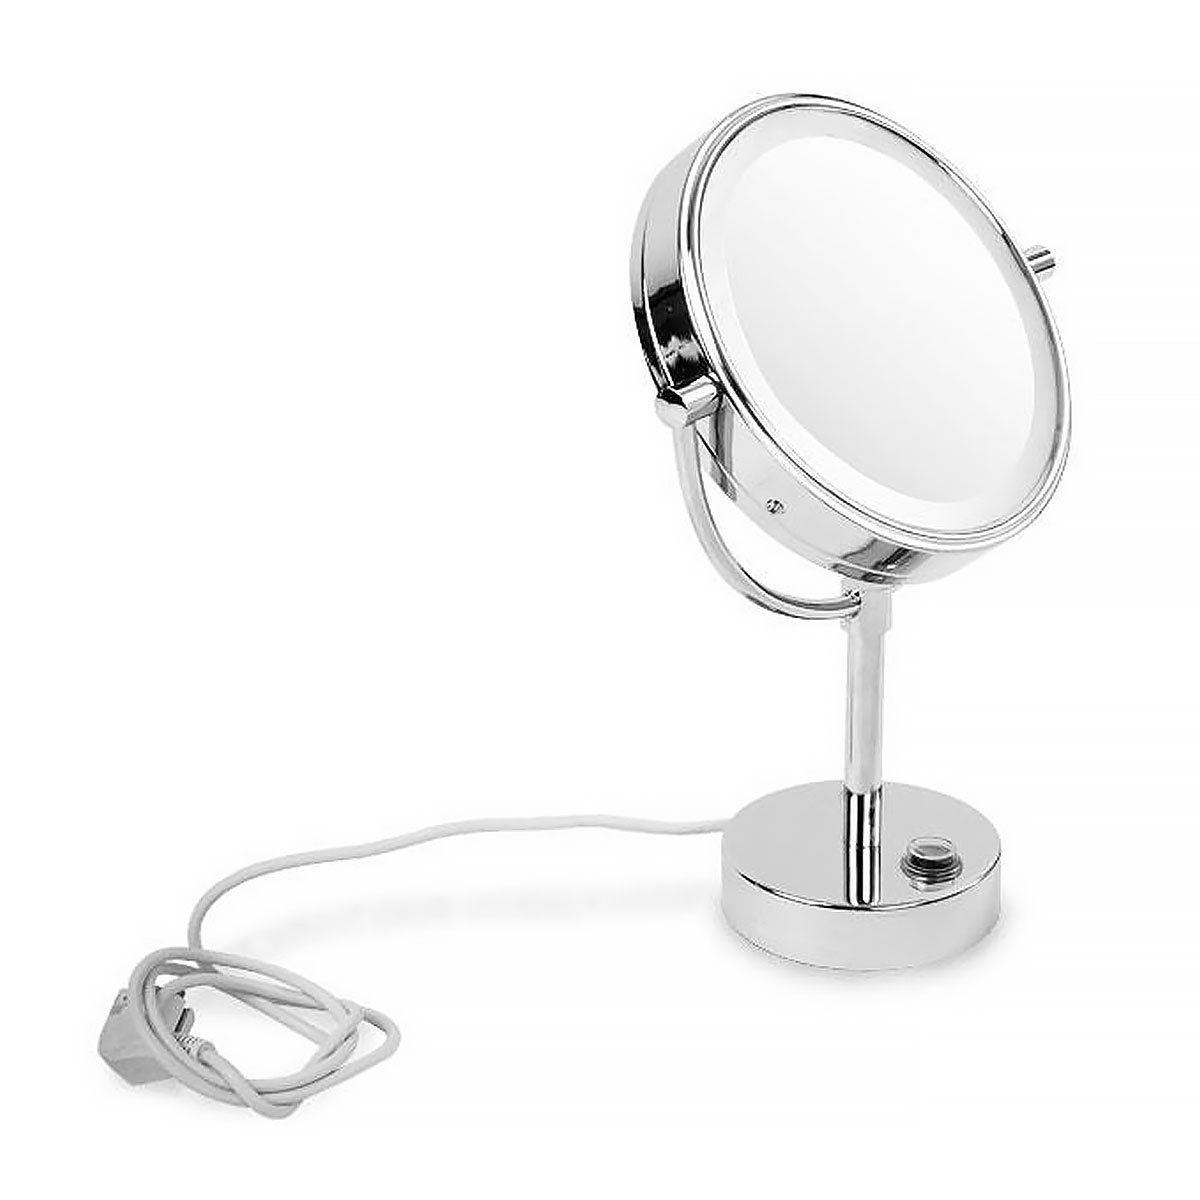 Vergrößerungen, 3 in Tischspiegel, casa LED-Lichtspiegel Vergrößerung, Standspiegel 5-fache Marilyn pura